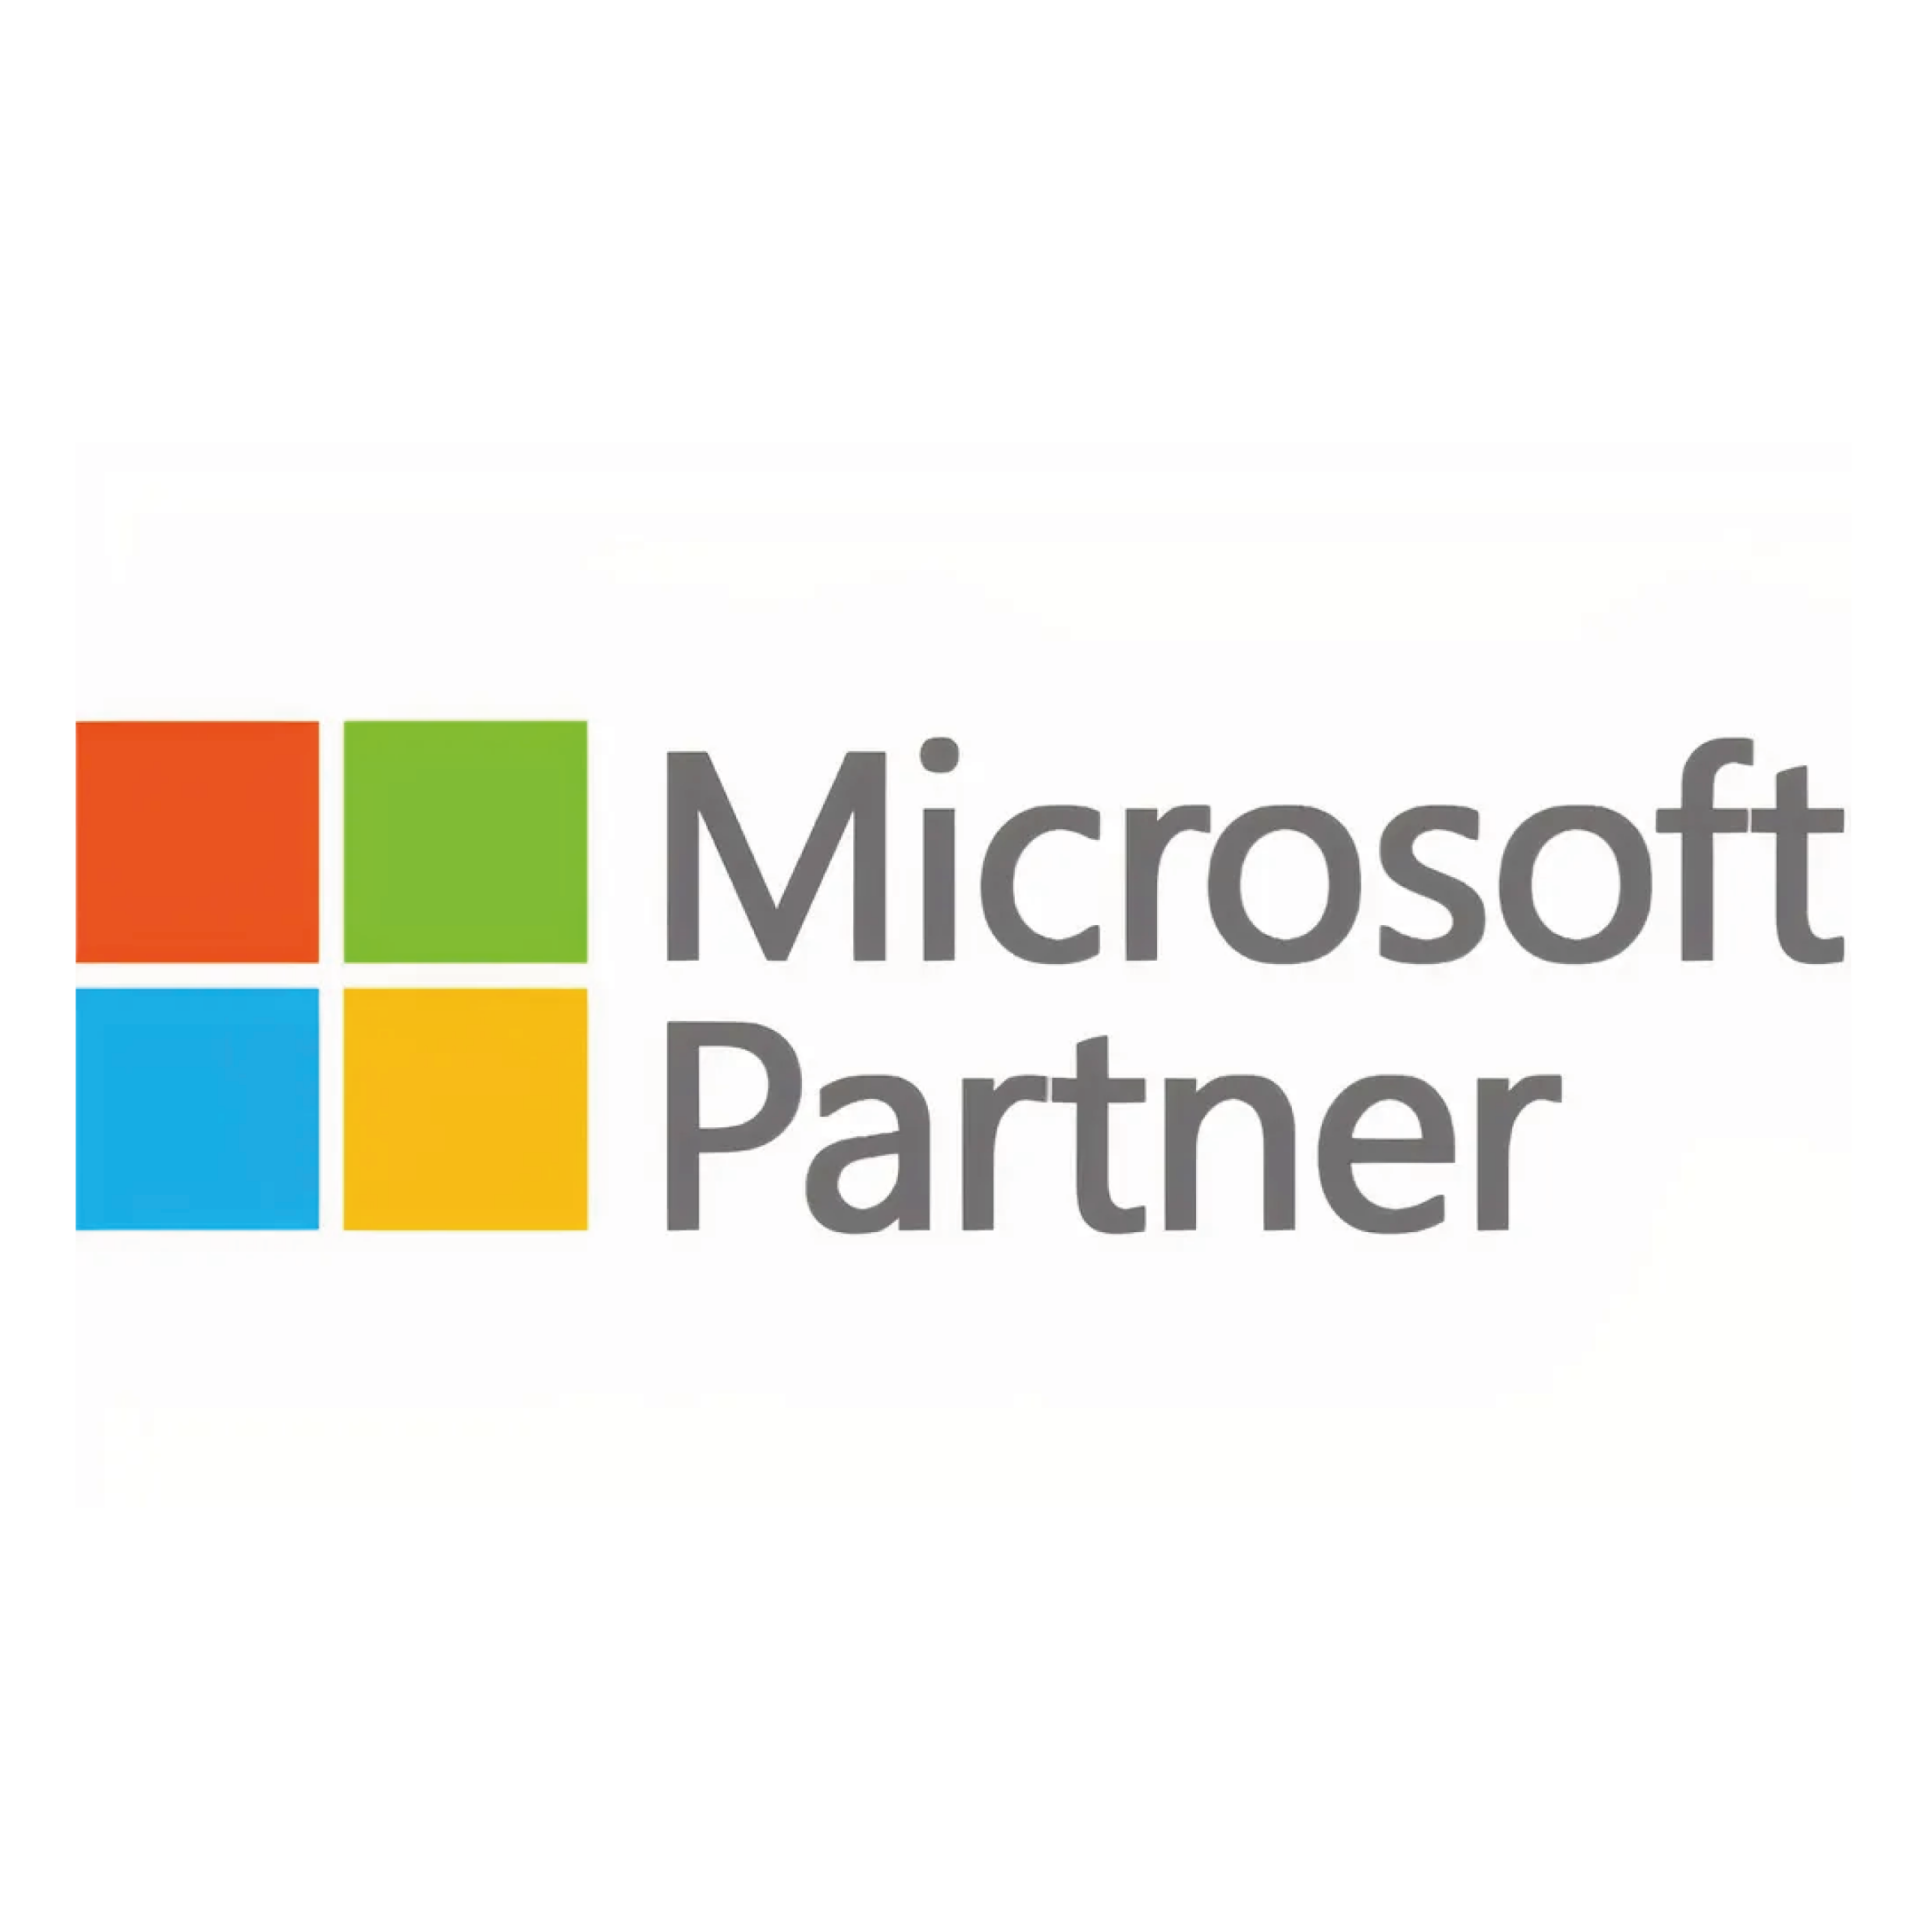 Microsoft Partner - Partenaire Sekens